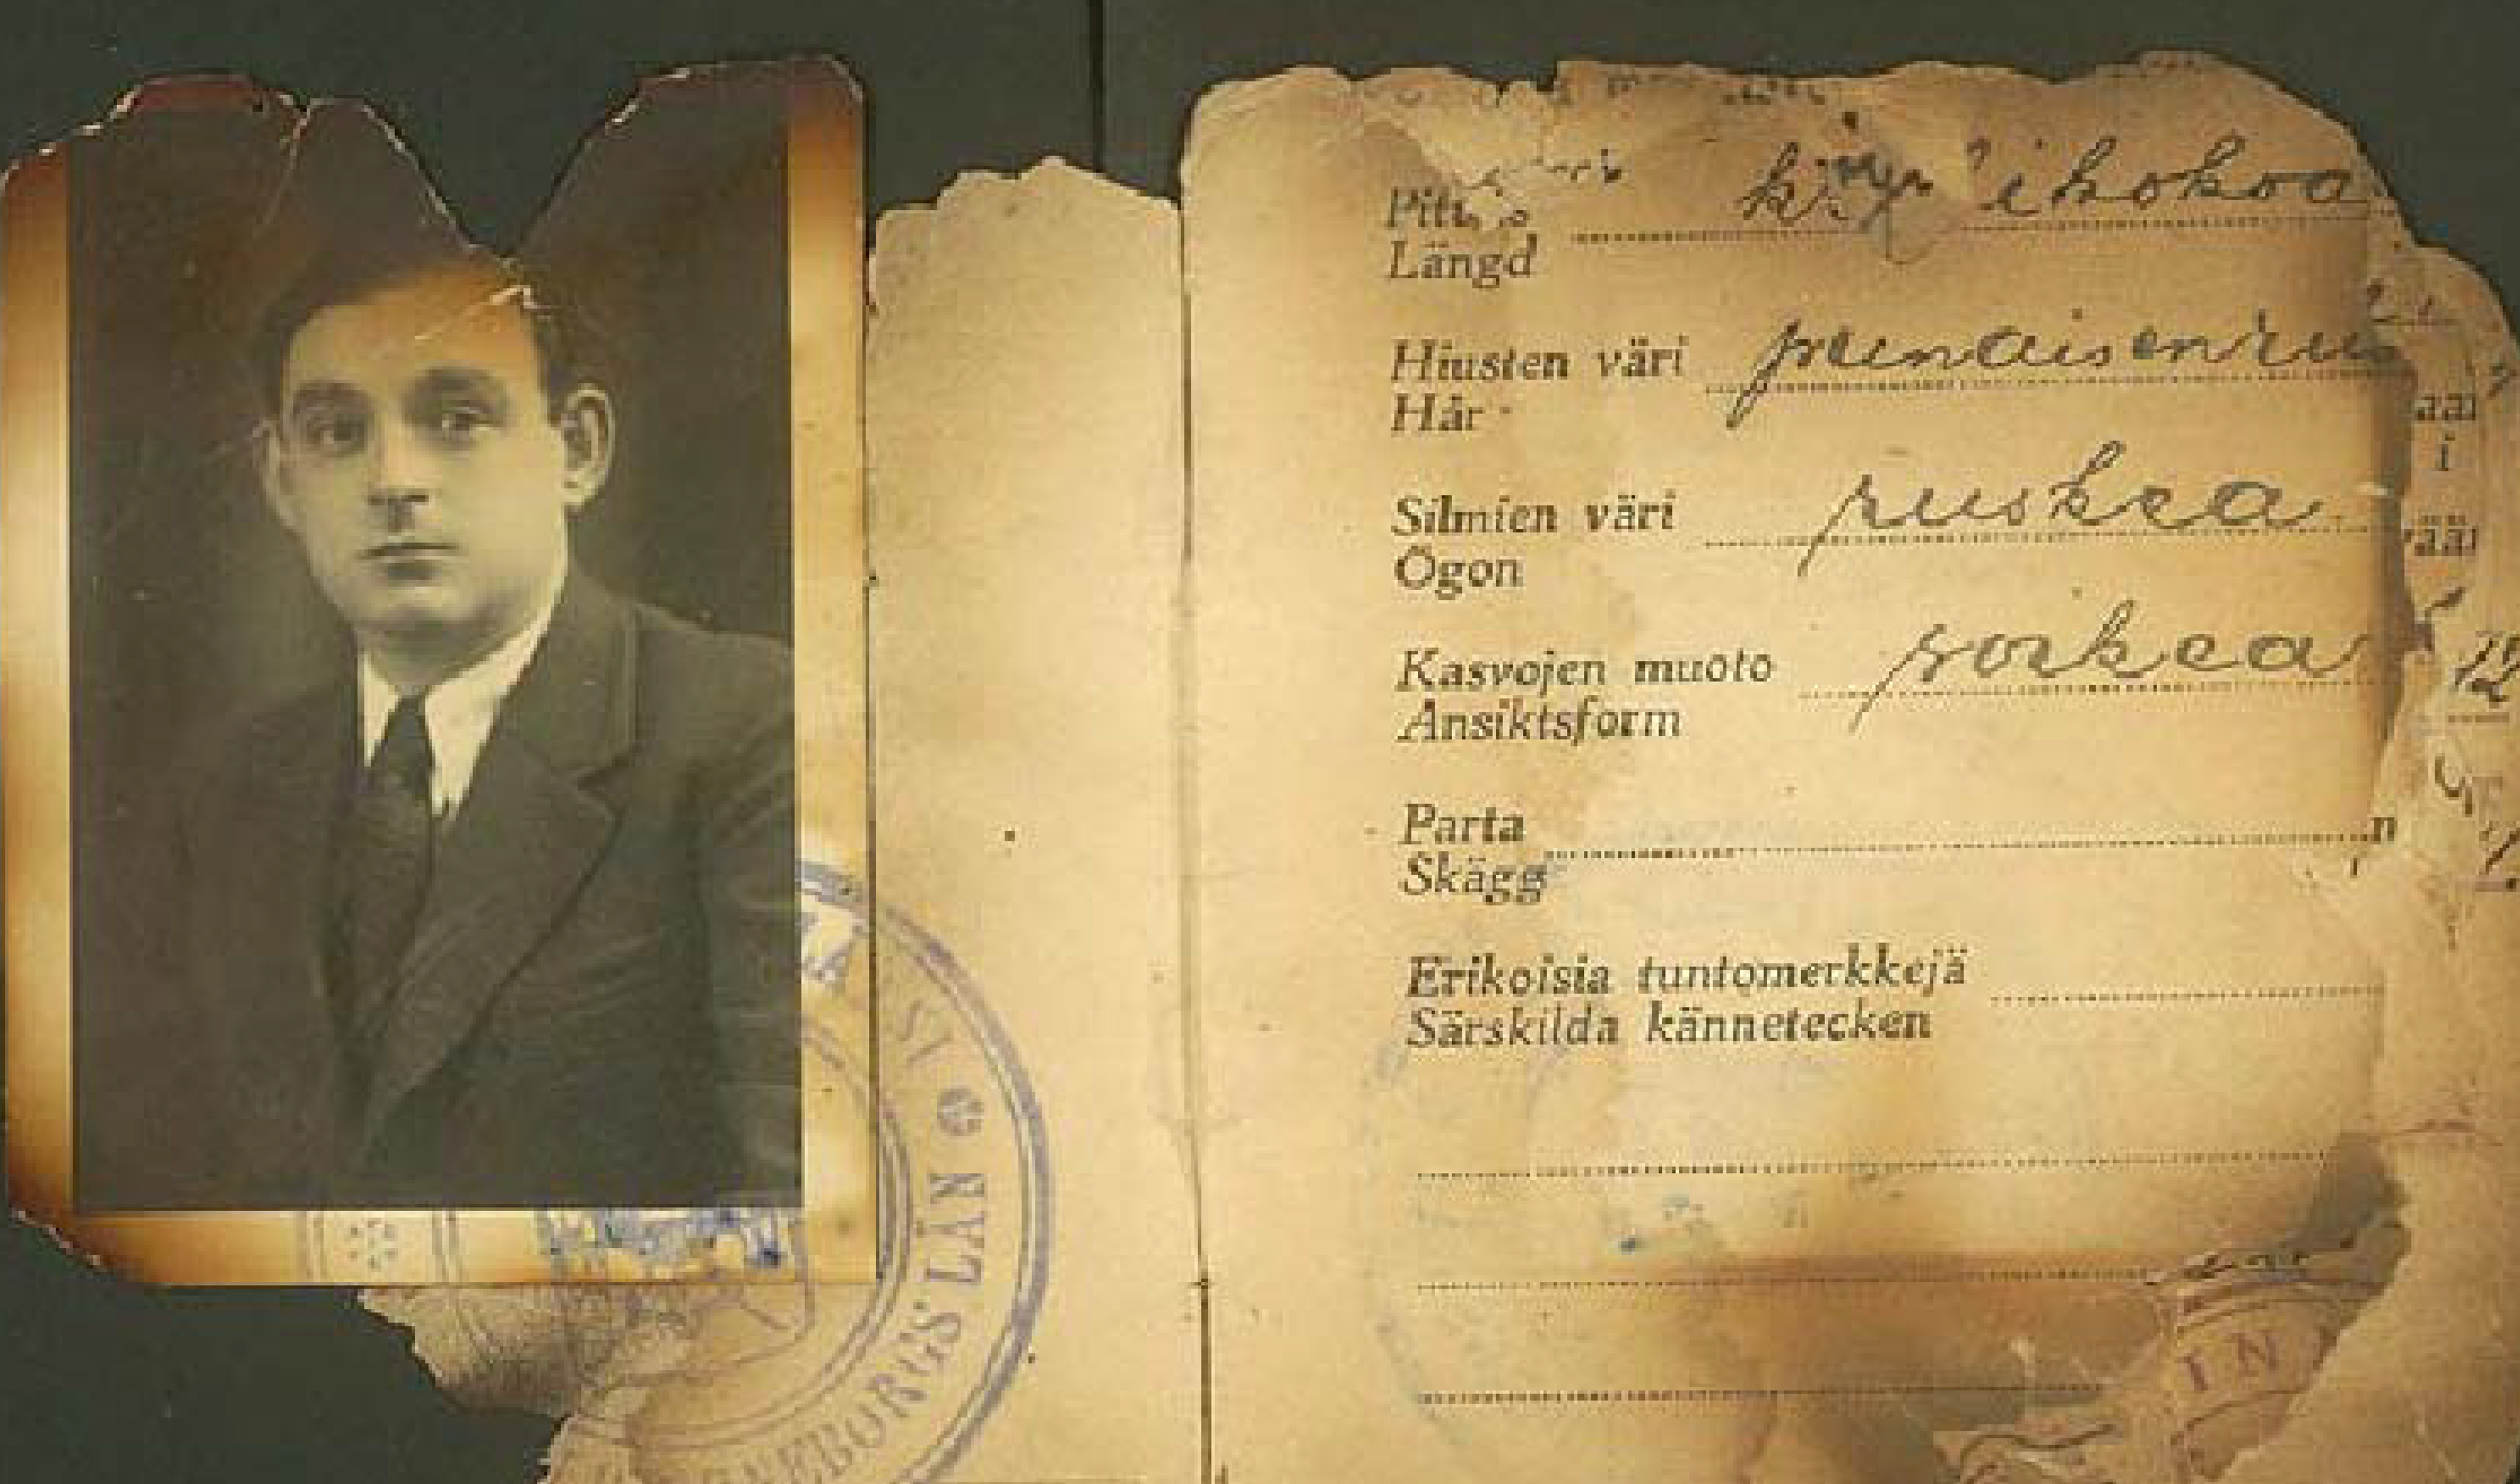 Ett gulnat dokument med text på svenska och finska beskriver Szybilskis utseende så som längd och hårfärg. Ett passfoto av en ung man i skjorta och slips man är fäst vid dokumentet.